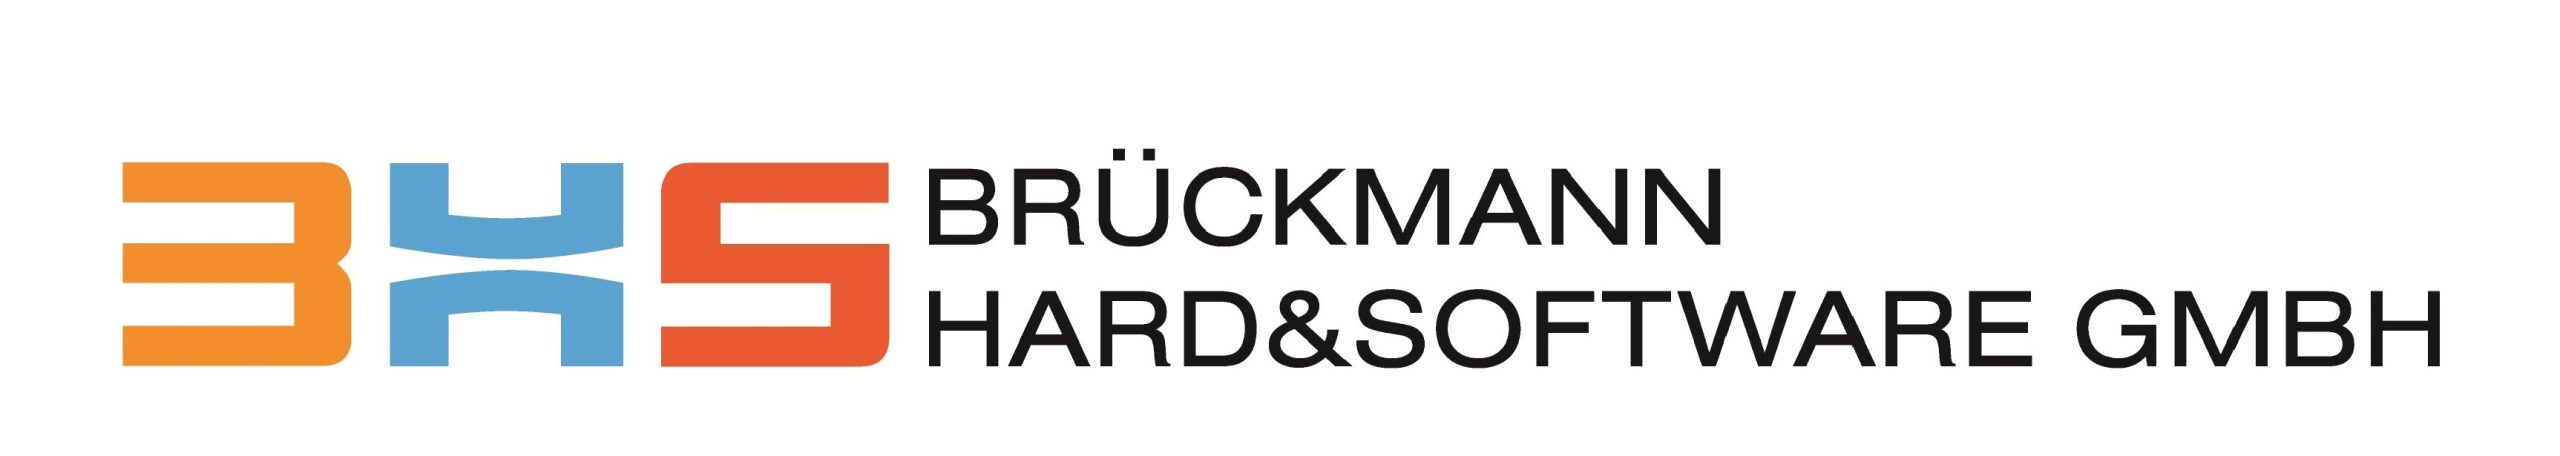 Brückmann Hard- und Software GmbH